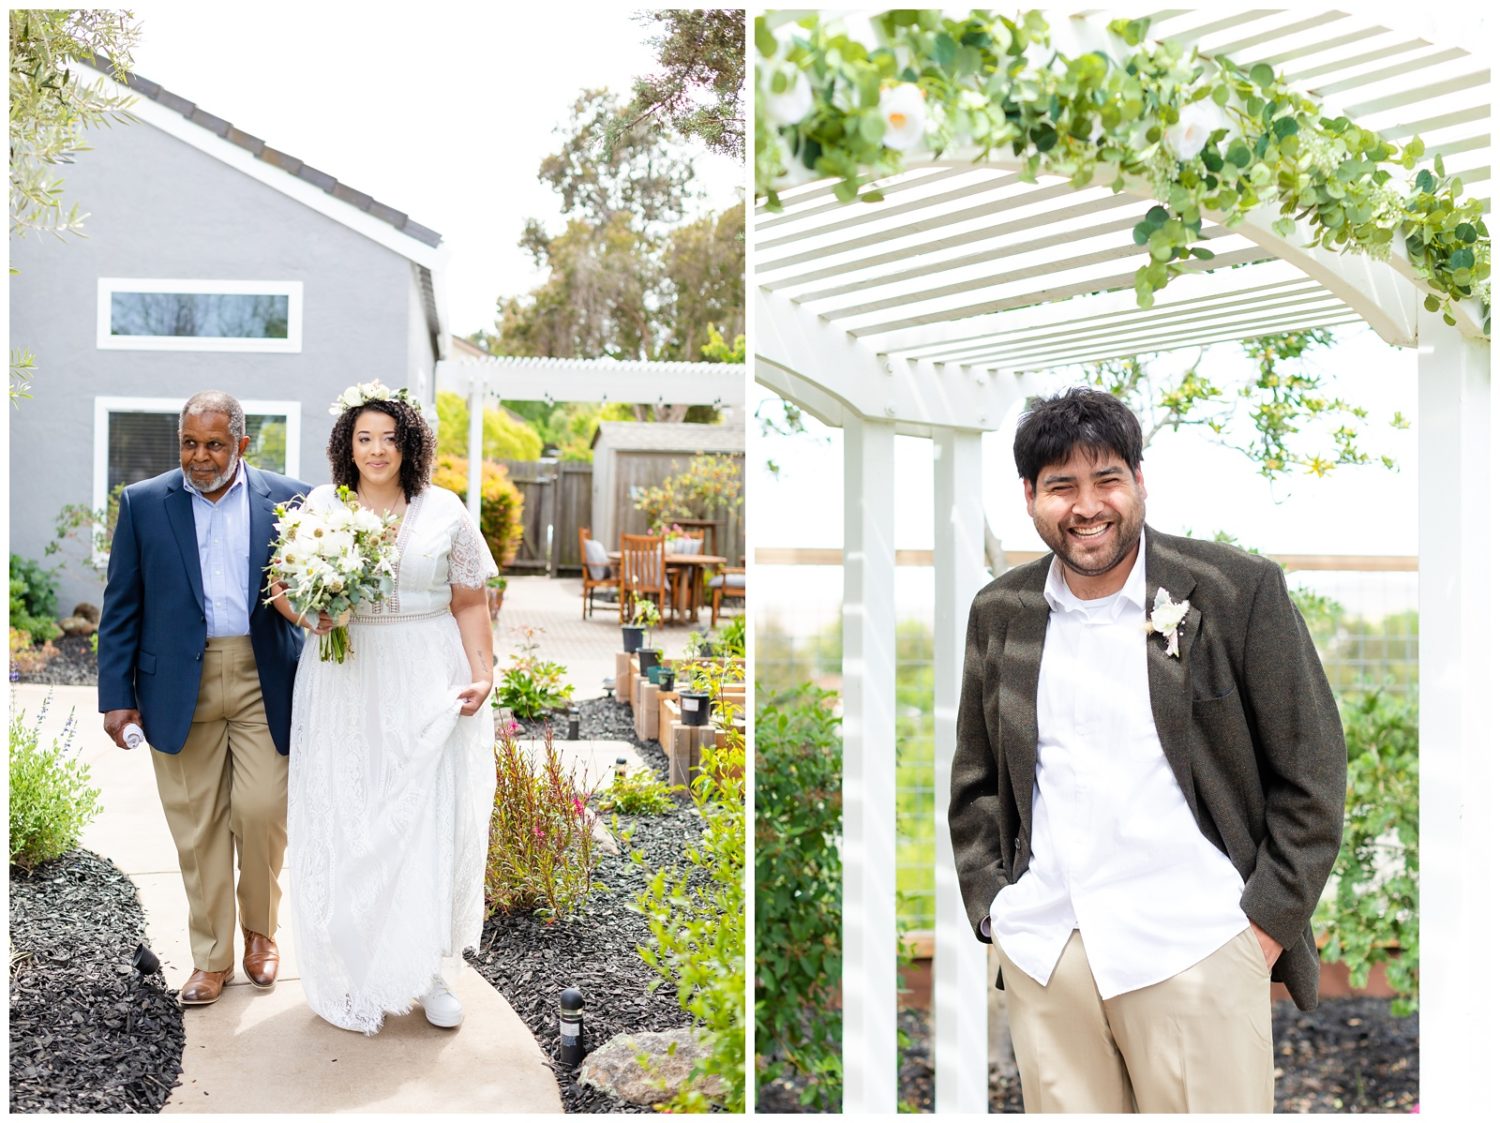 Backyard garden wedding photos